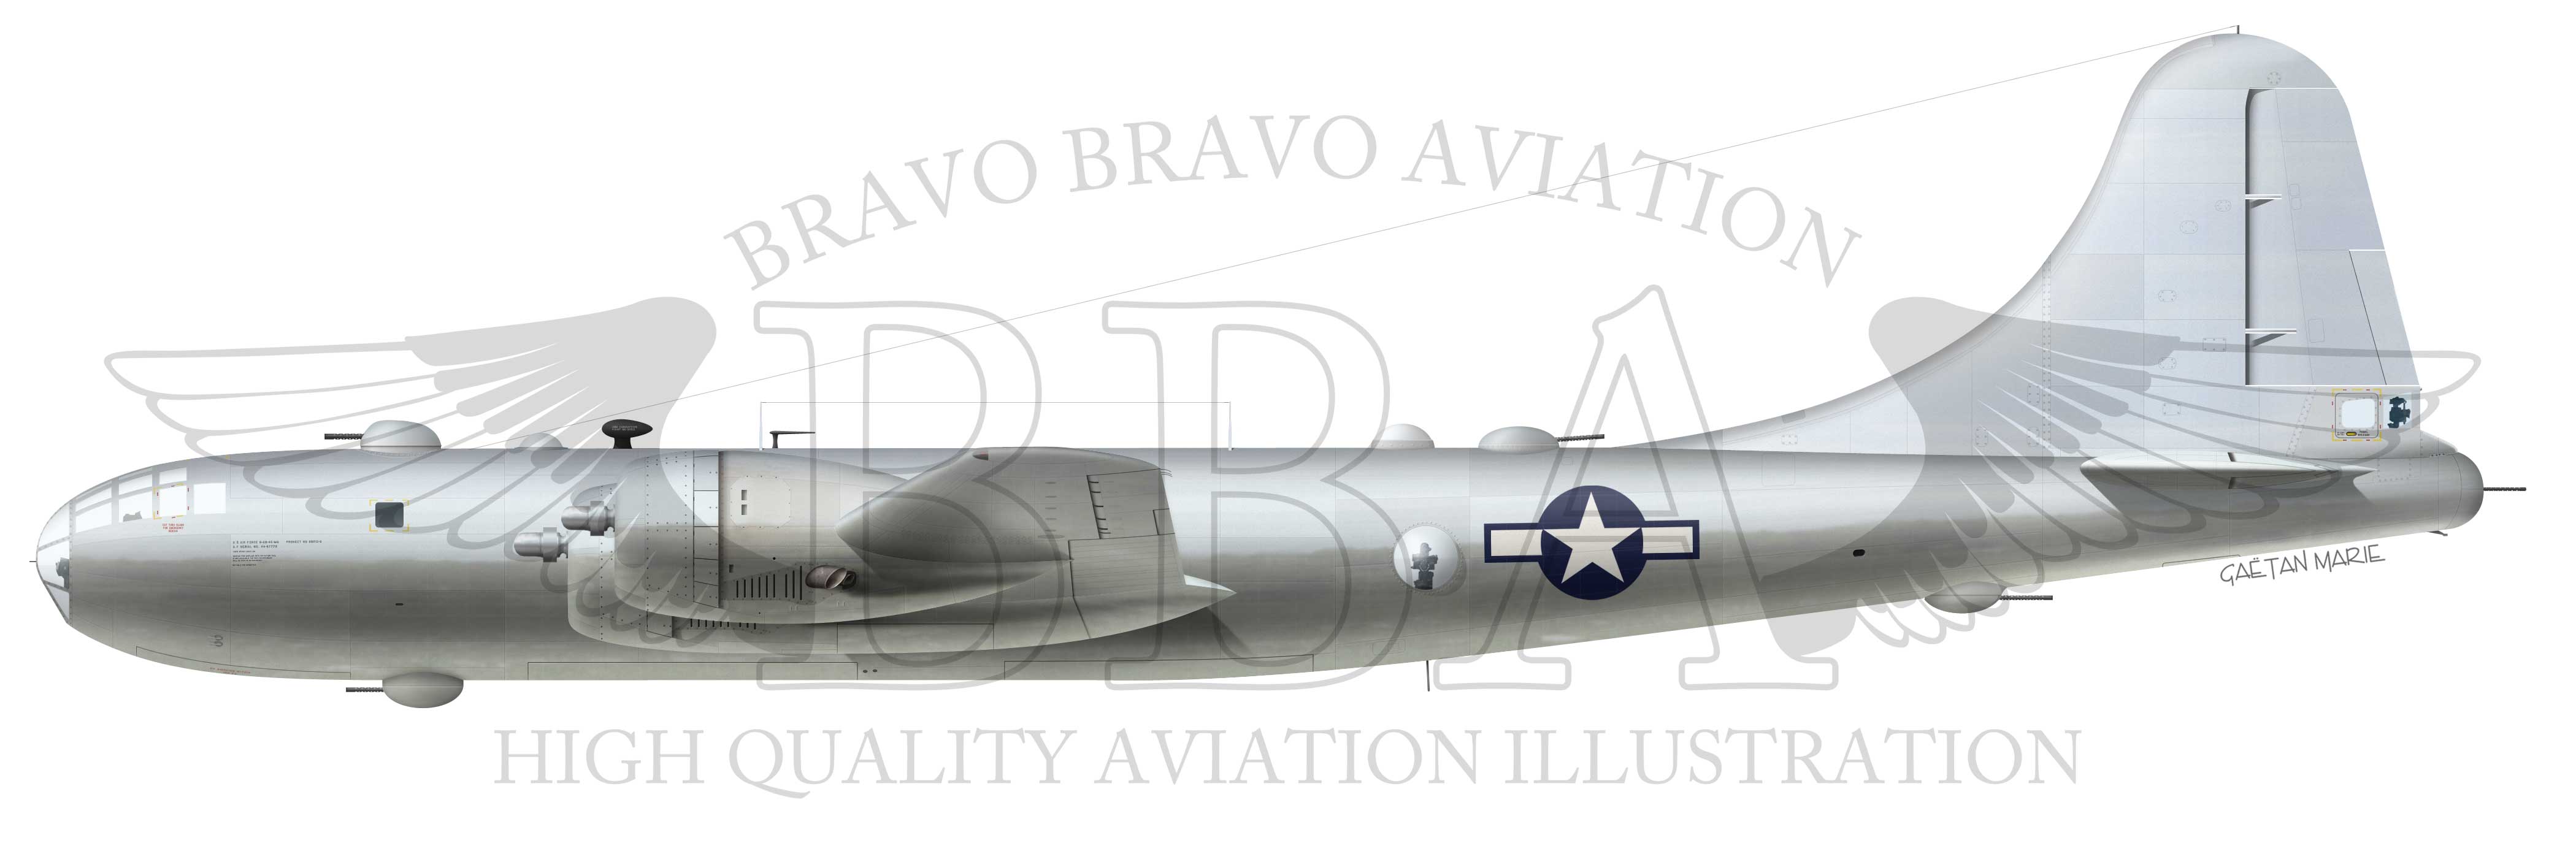 aaa-b-29a-port-model